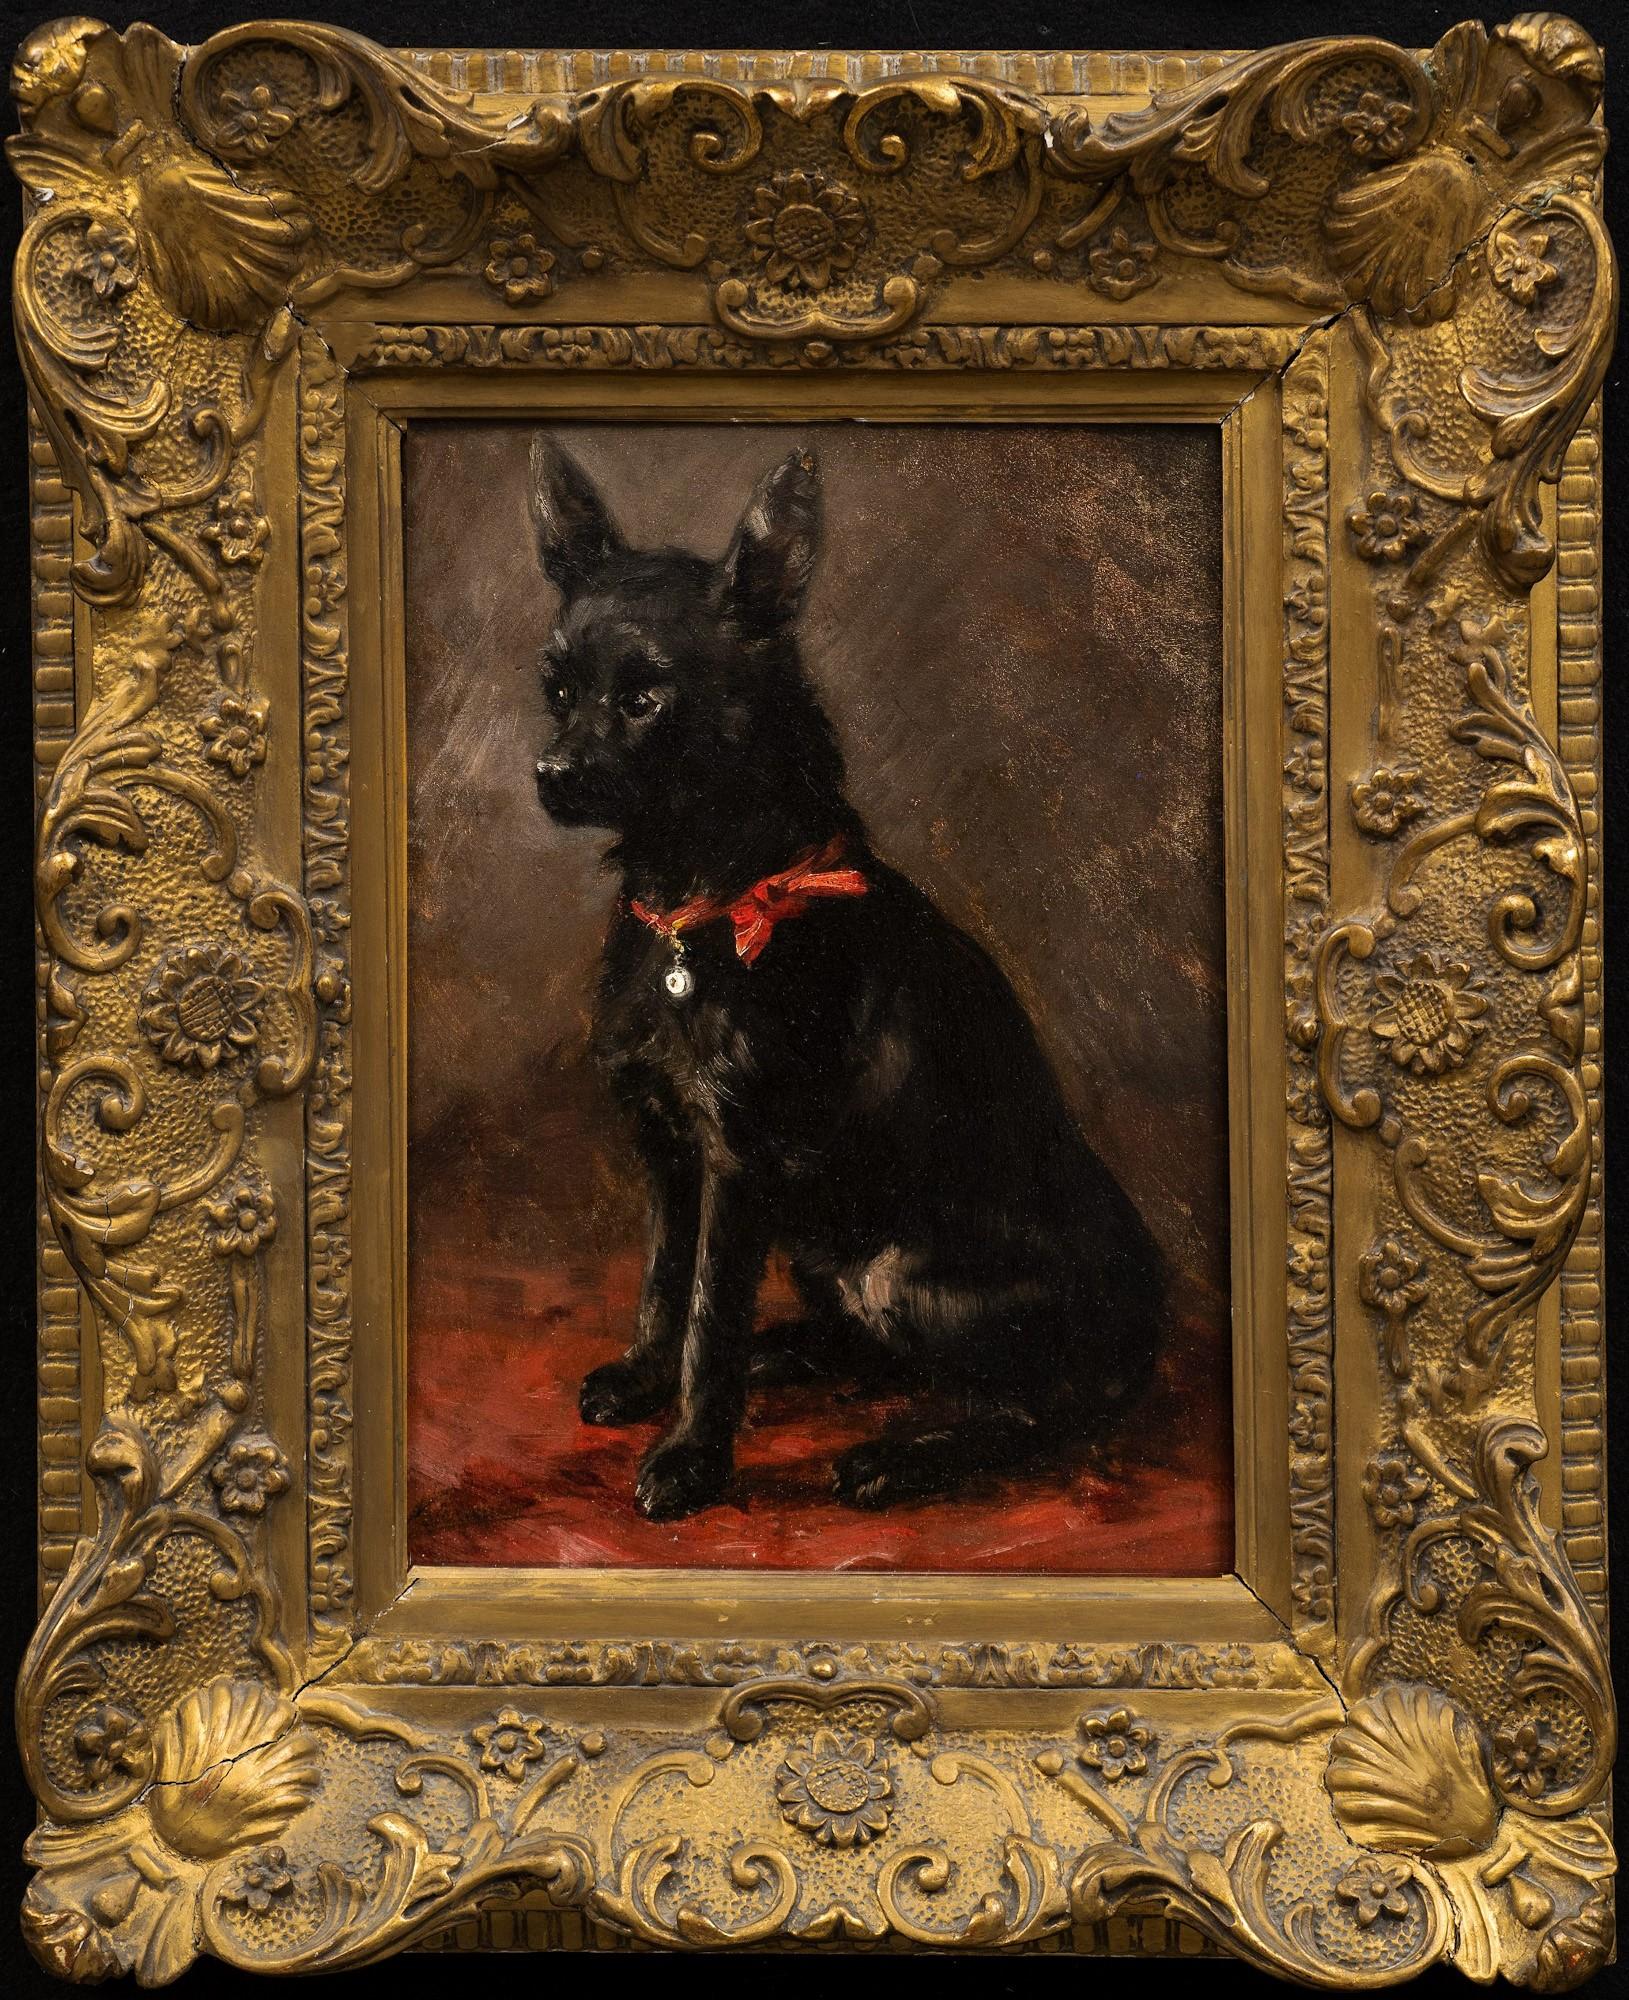 Pintura sobre perros: "Retrato de un chihuahua con lazo rojo" 
Zacharias Noterman (Bélgica, Francia 1824-1890)
Circa. 1870s
Óleo sobre panel de madera (caoba)
Estuco original y marco dorado
13 1/2 x 9 1/2 (22 1/4 x 18 1/4 marco) pulgadas

Con la